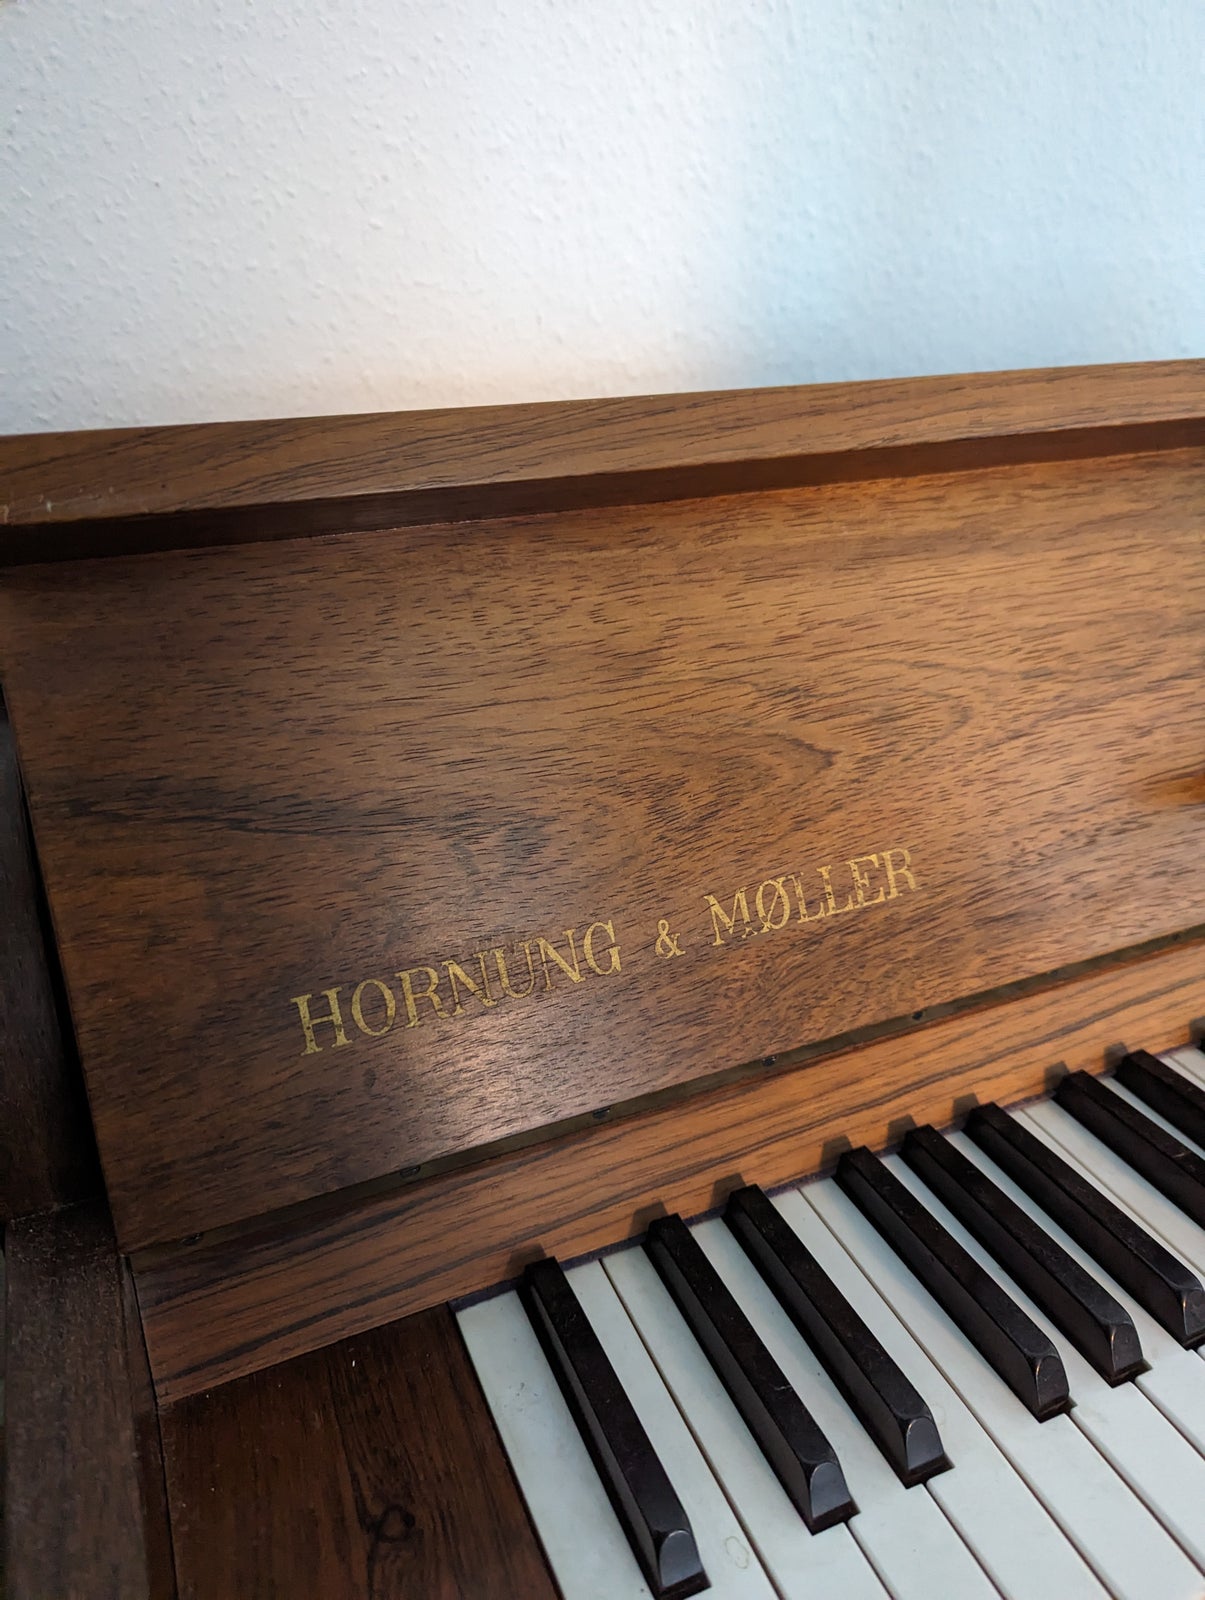 Pianette, Hornung & Møller